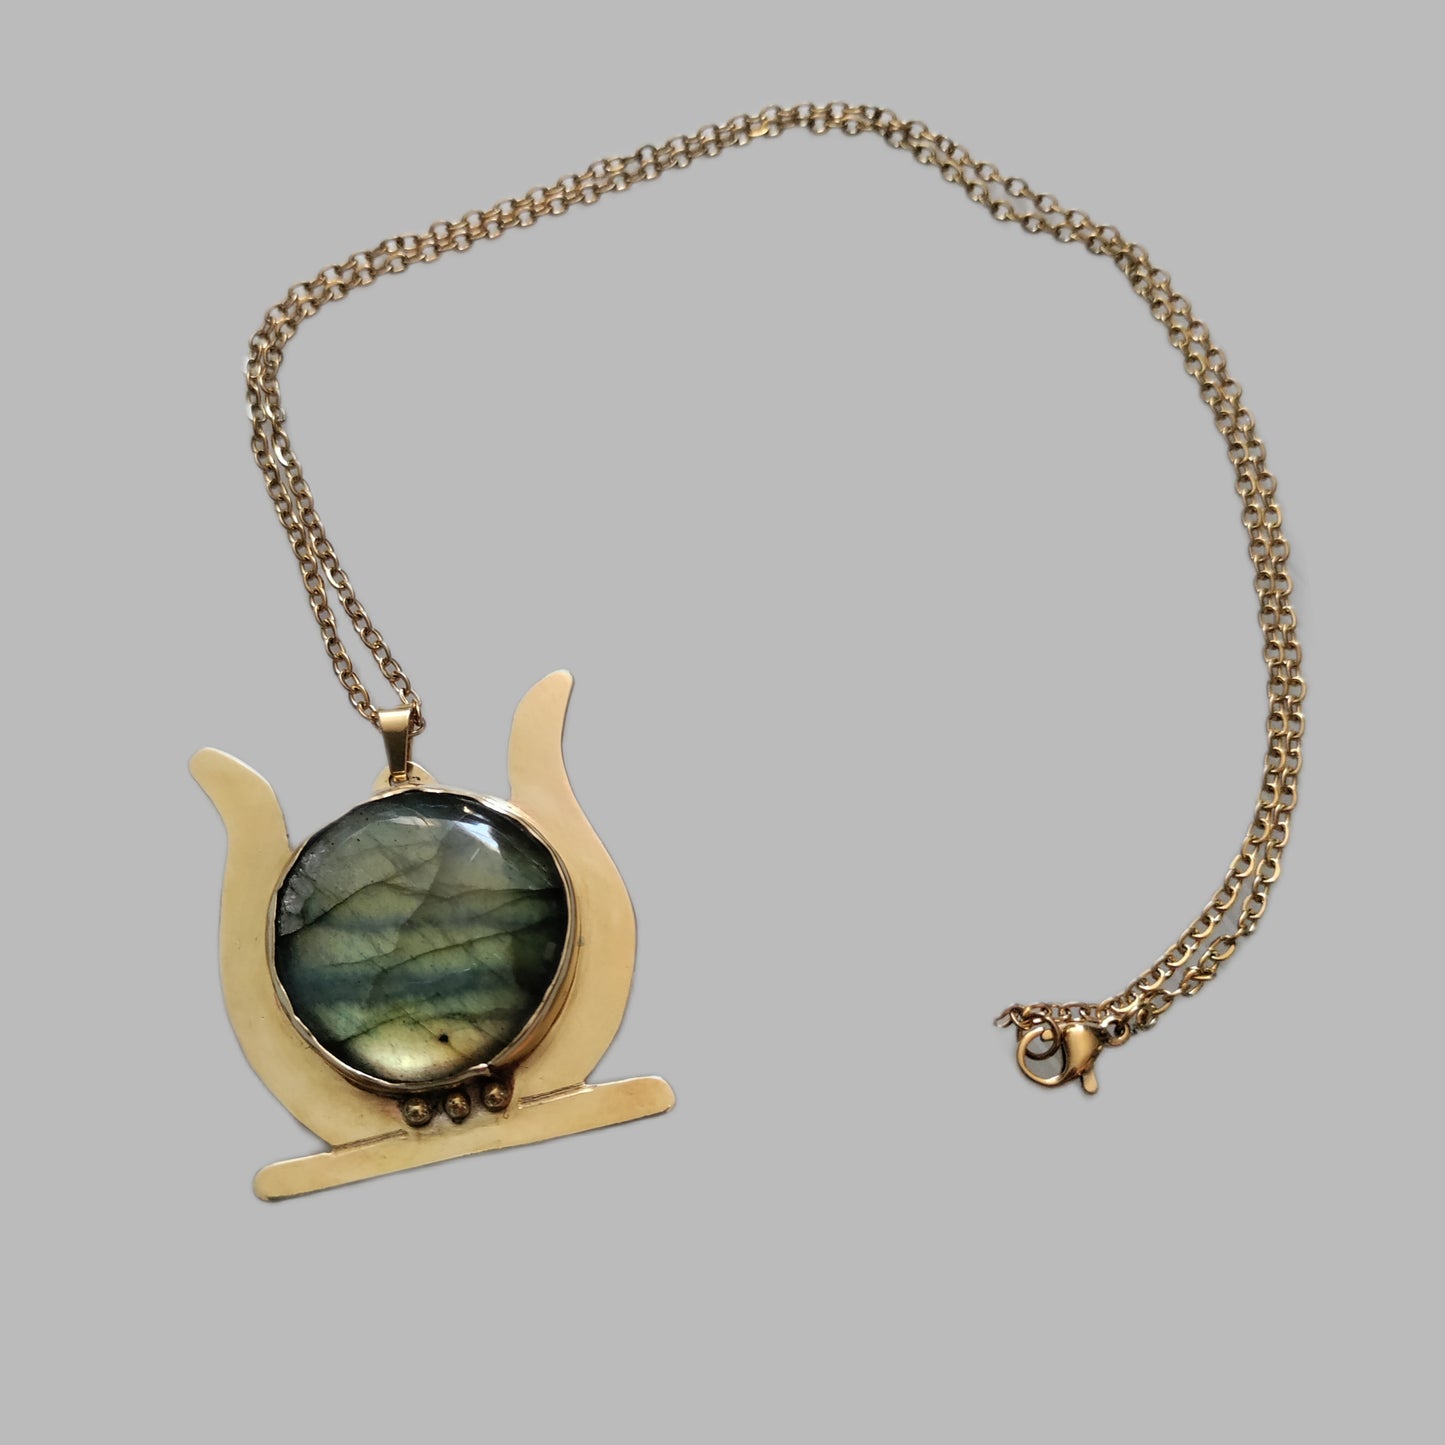 Solar disk necklace green labradorite